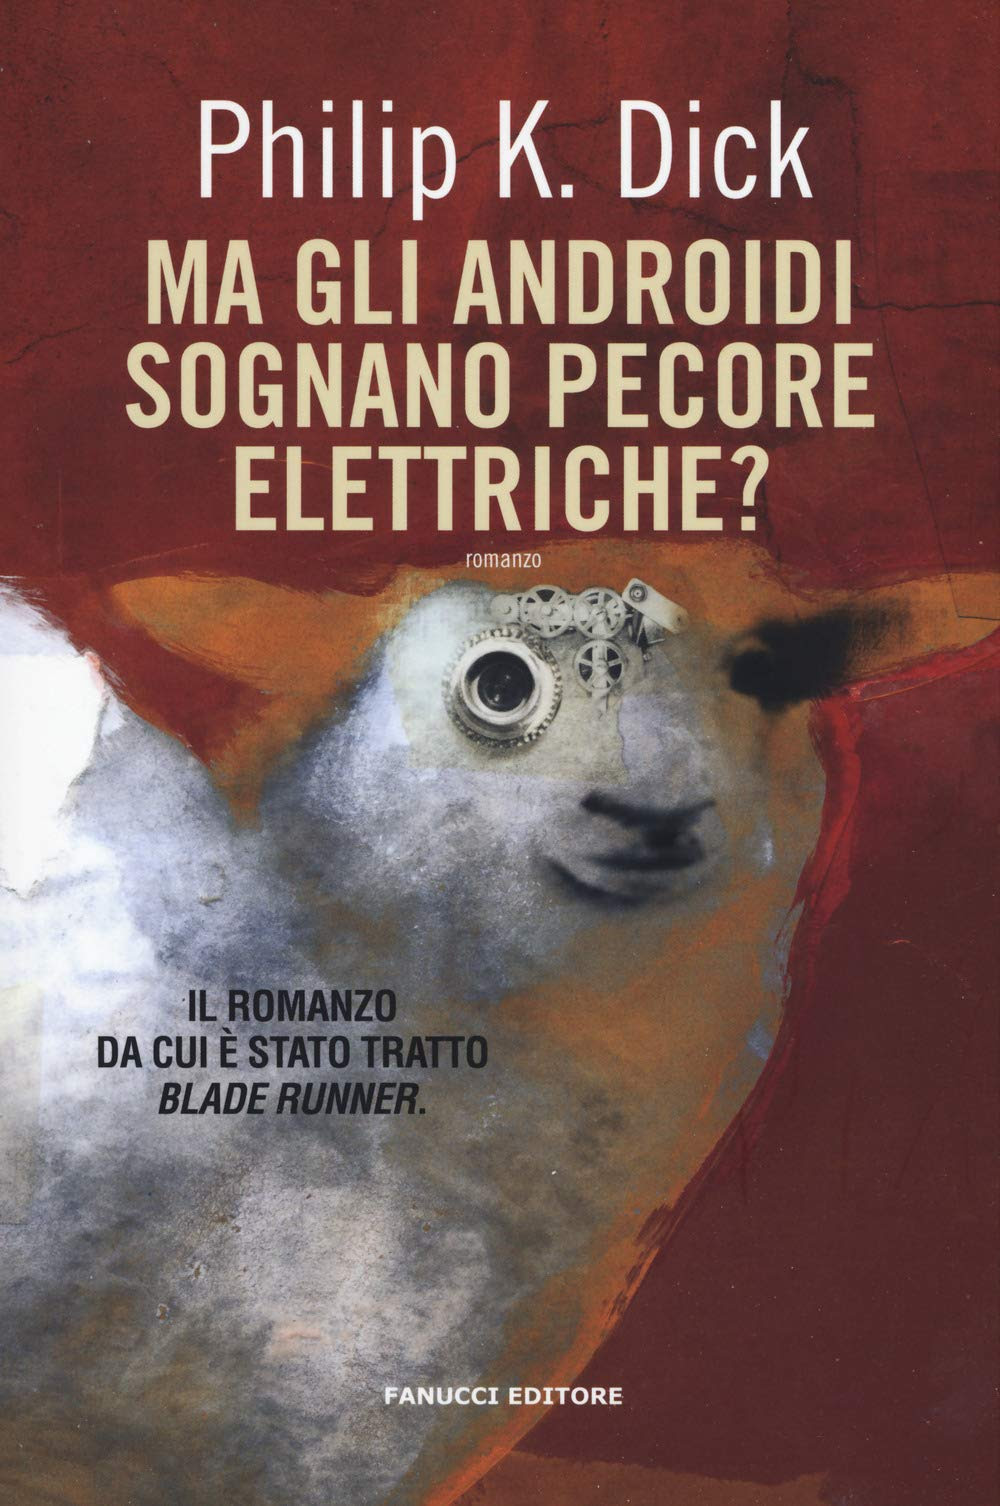 Ma gli androidi sognano pecore elettriche? in Kindle/PDF/EPUB